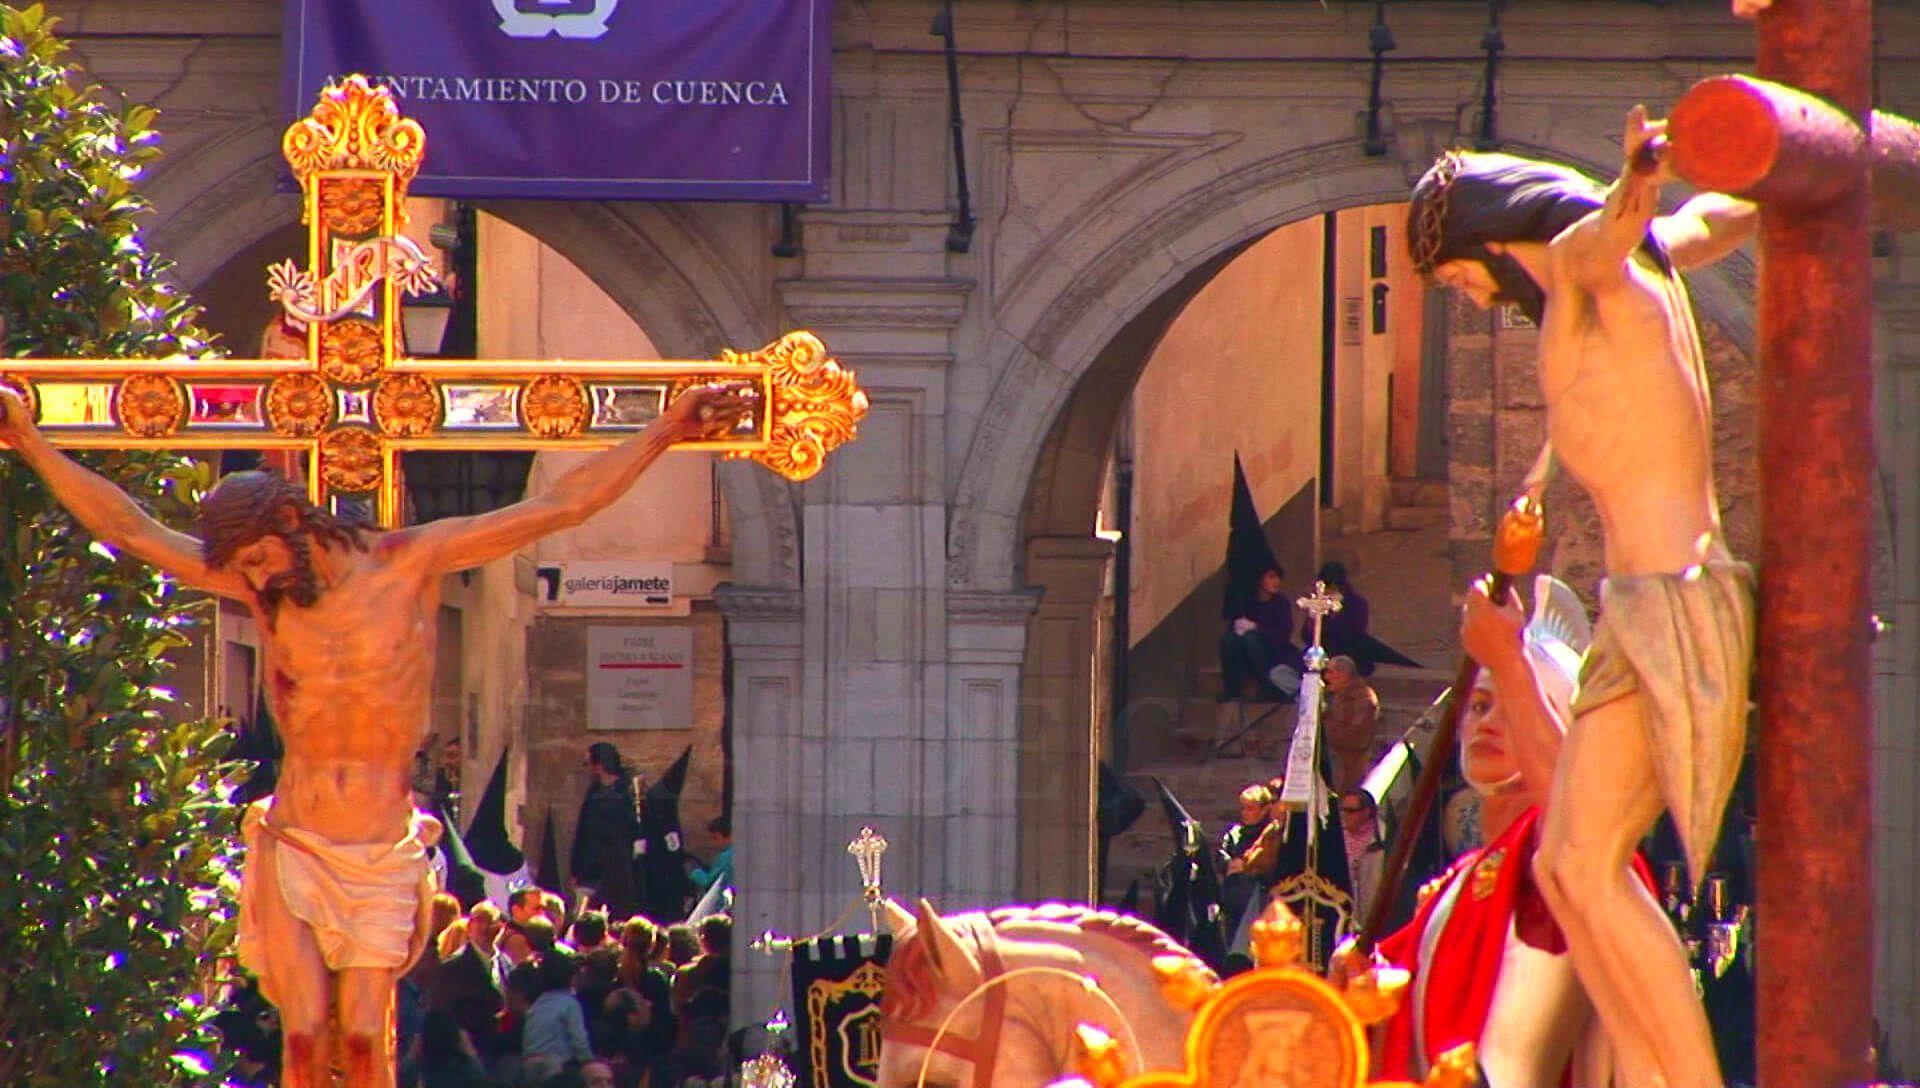 Este año tampoco habrá procesiones de Semana Santa en Cuenca por la COVID-19